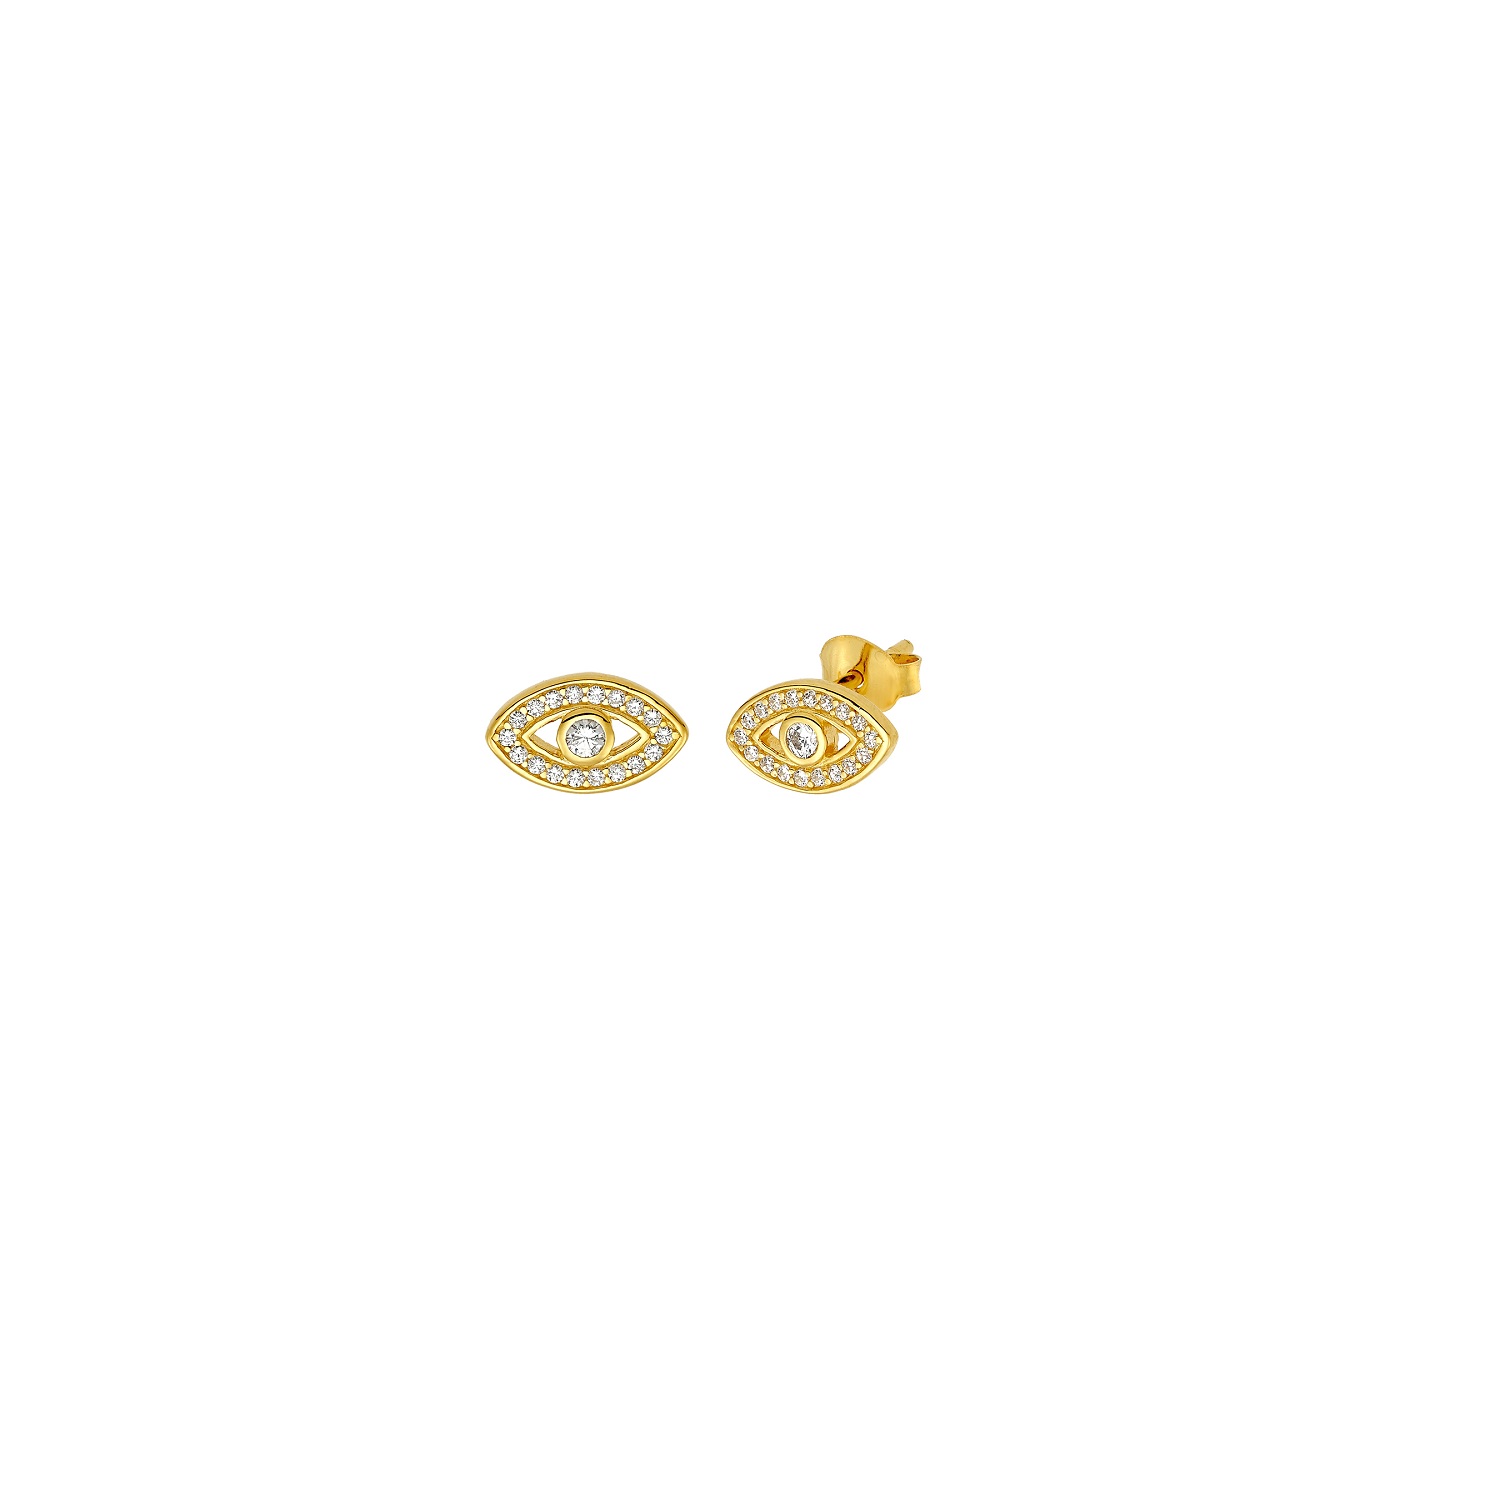 Γυναικεία/Αξεσουάρ/Κοσμήματα/Σκουλαρίκια VOGUE - Γυναικεία ασημένια καρφωτά σκουλαρίκια ματάκια VOGUE χρυσά